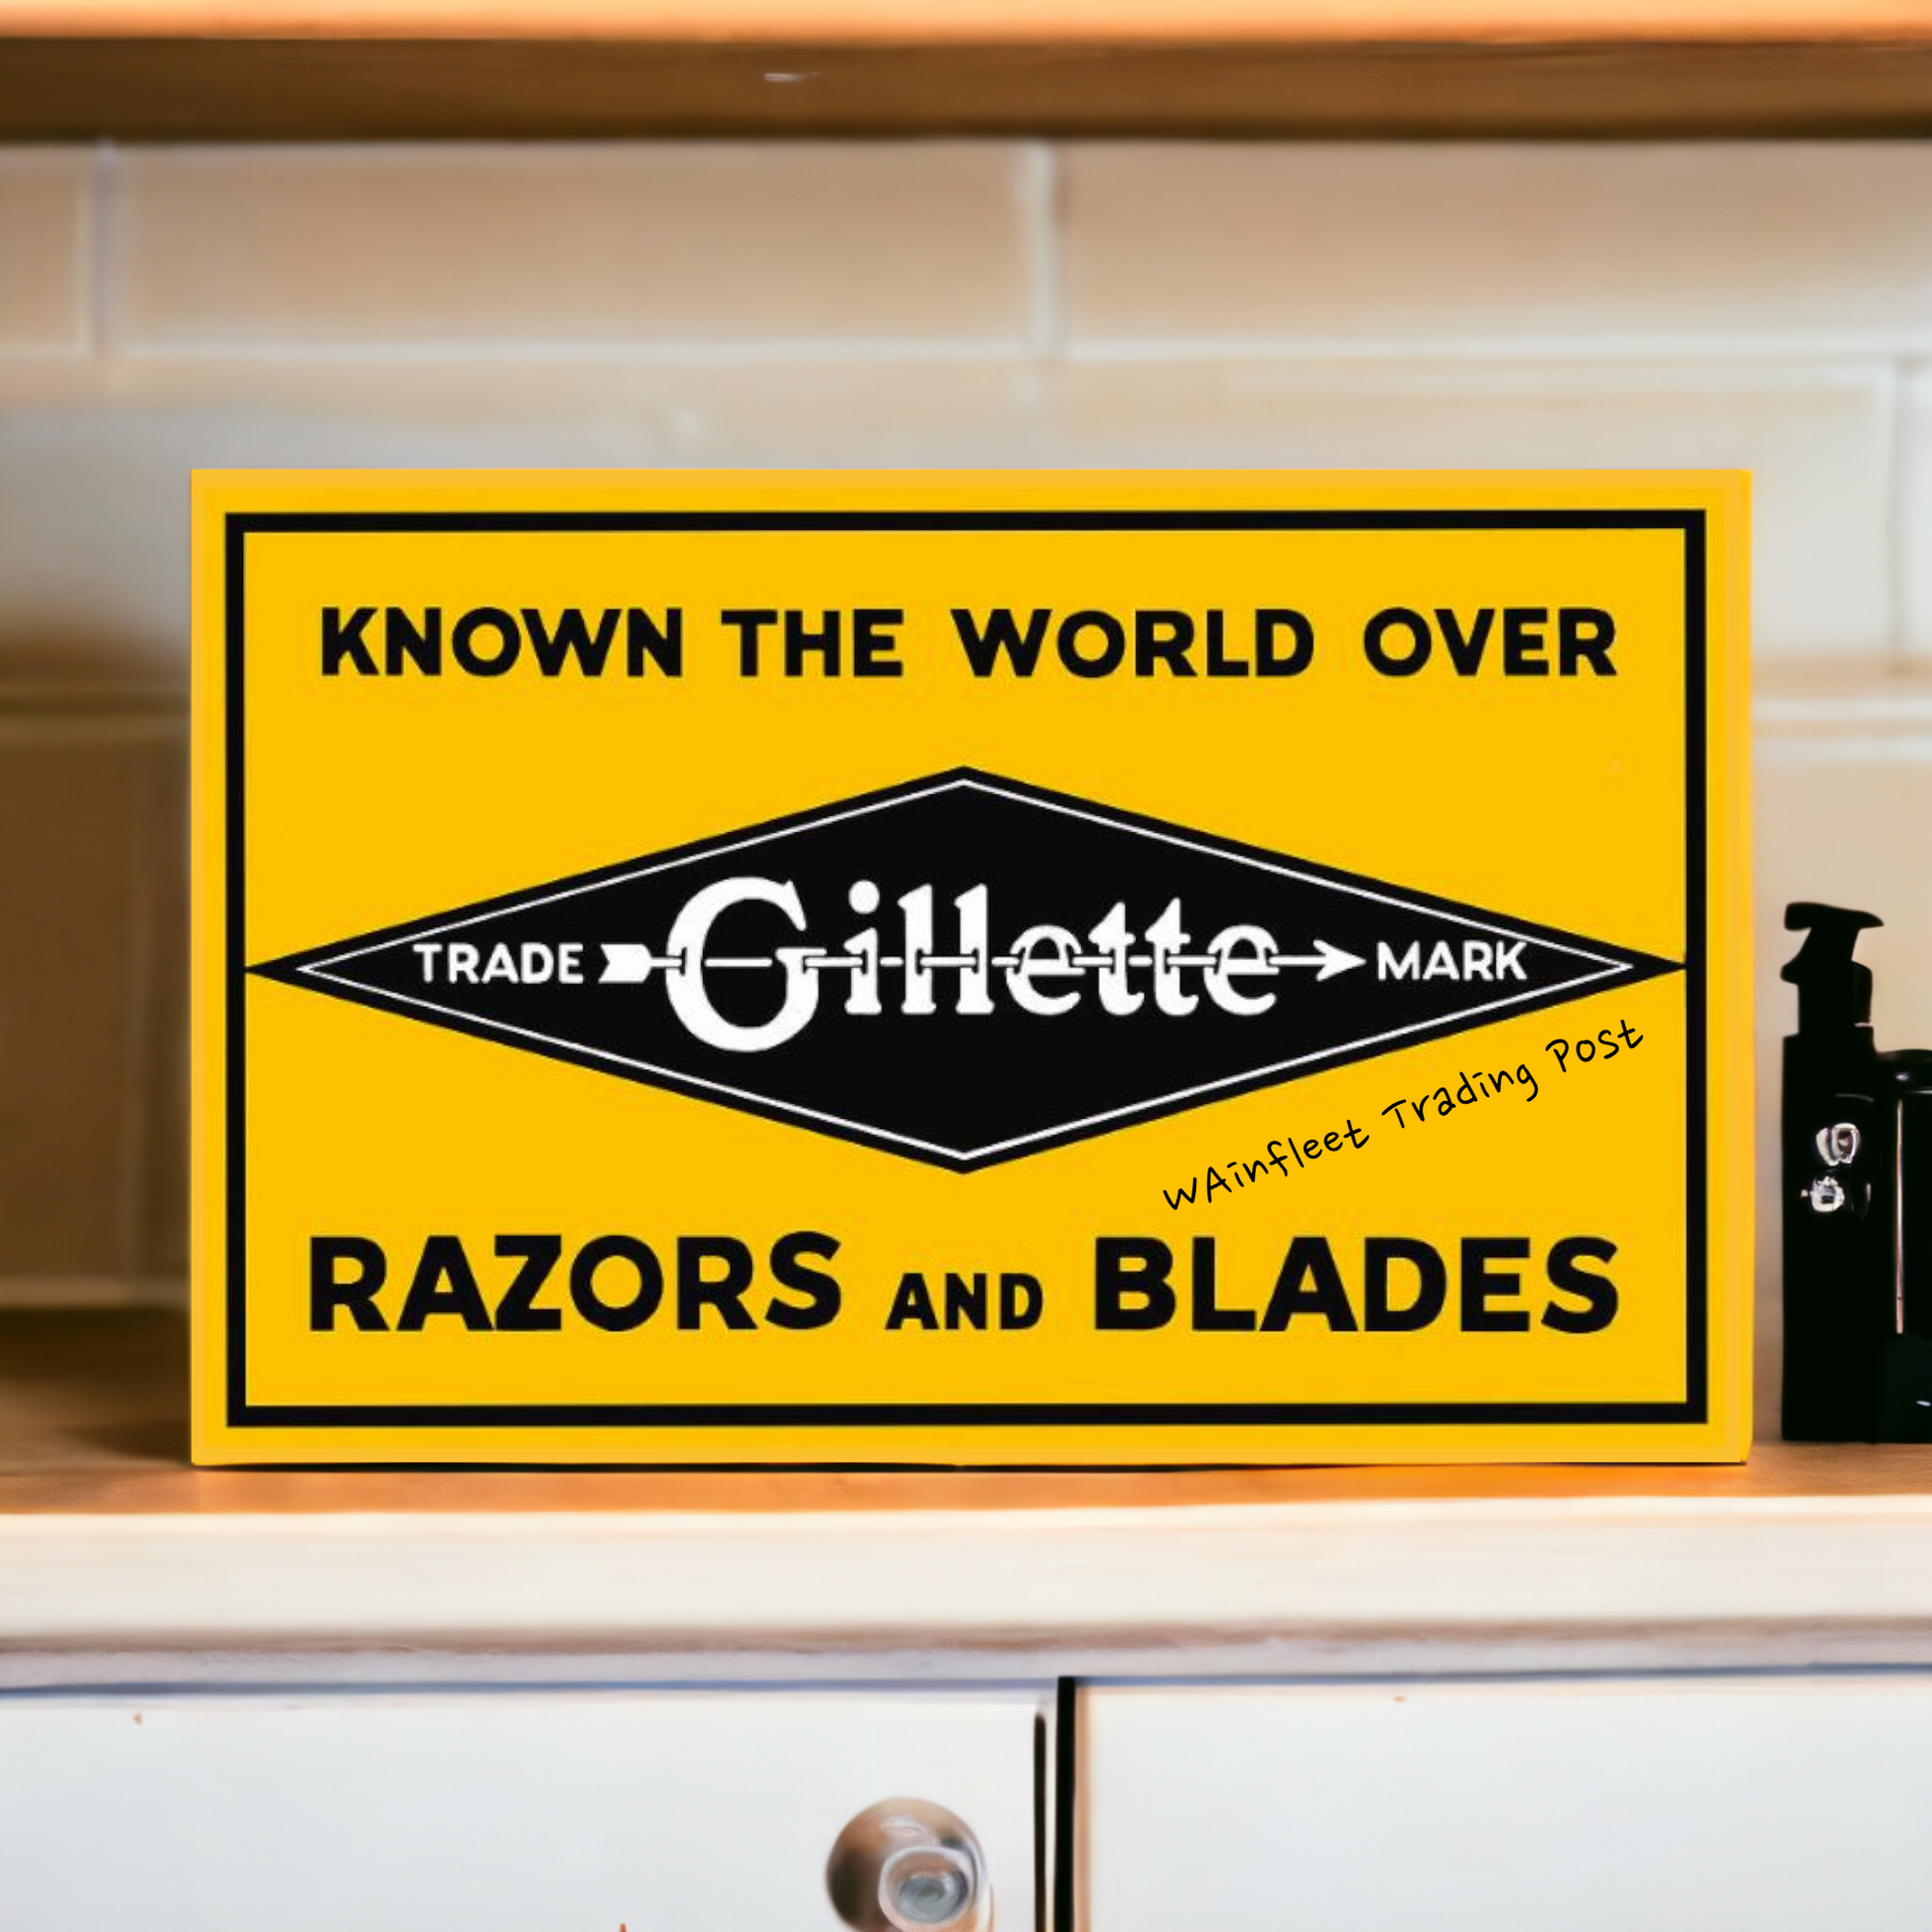 gillette Razor and Blades barber sign 